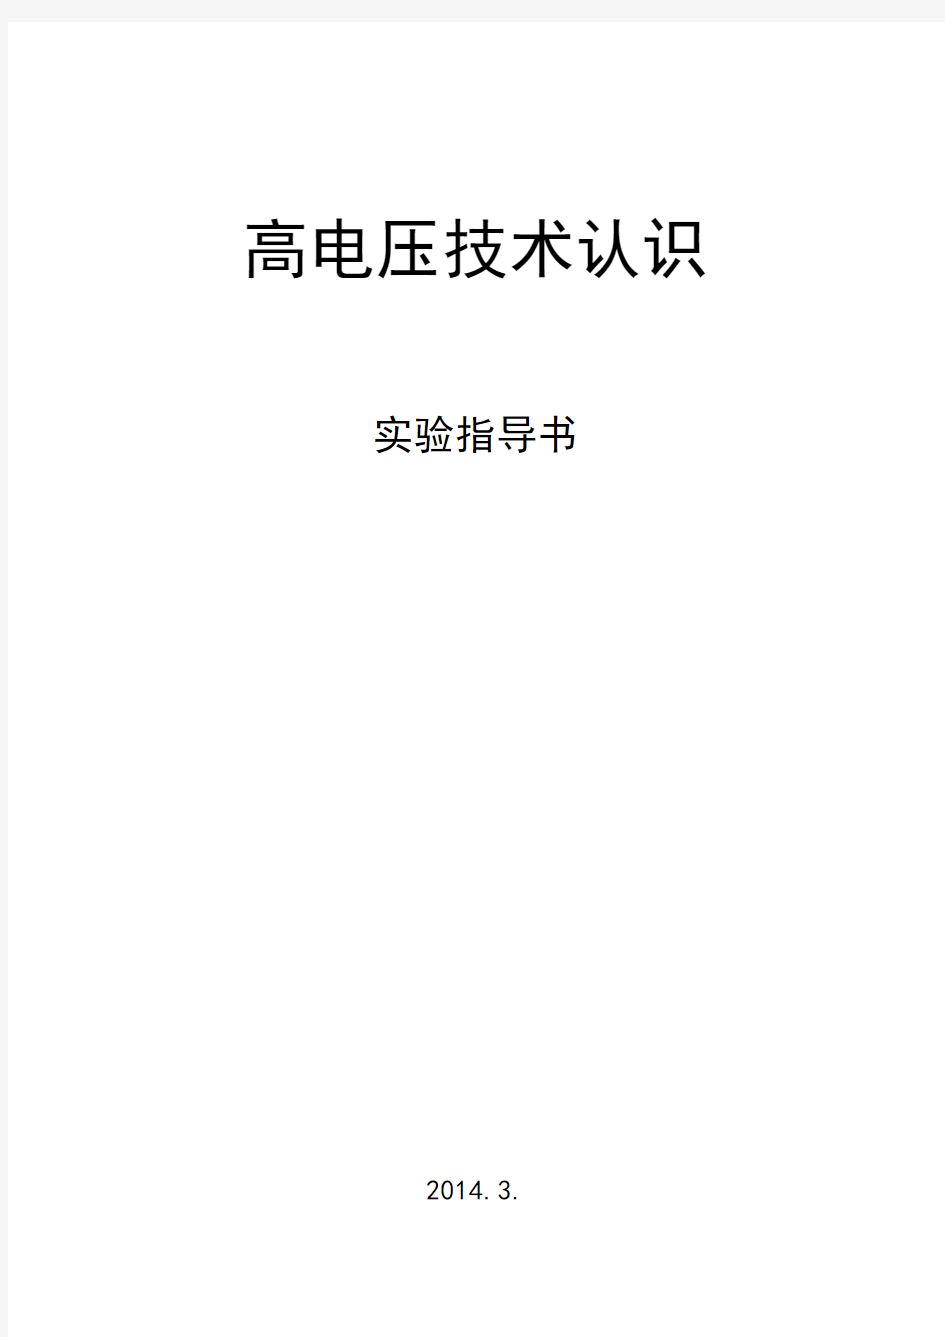 高电压技术实验指导书(2014.2)